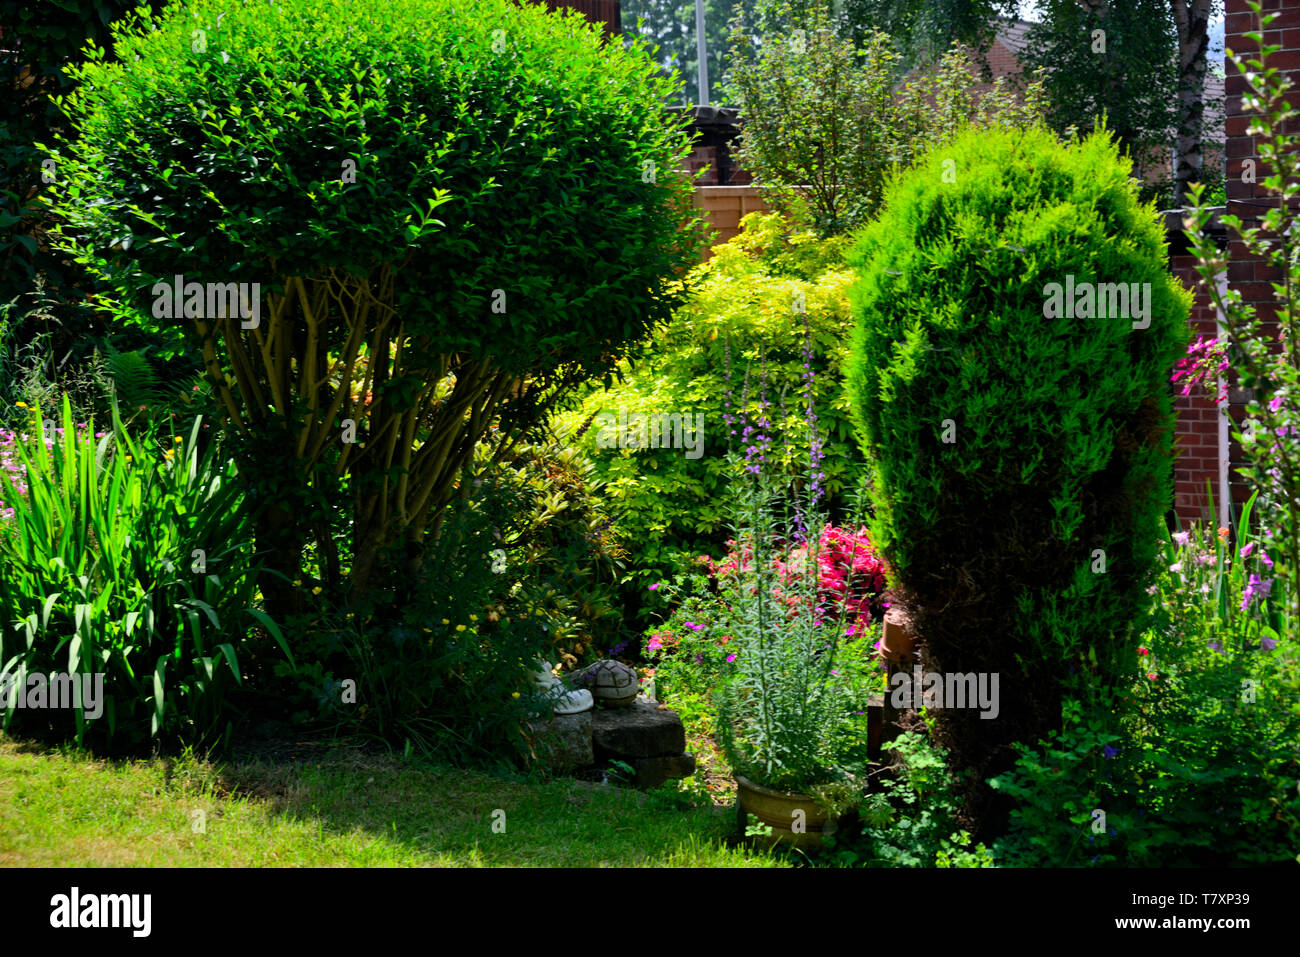 FLORA & FAUNA, Genaral private garden views of my own garden. Stock Photo